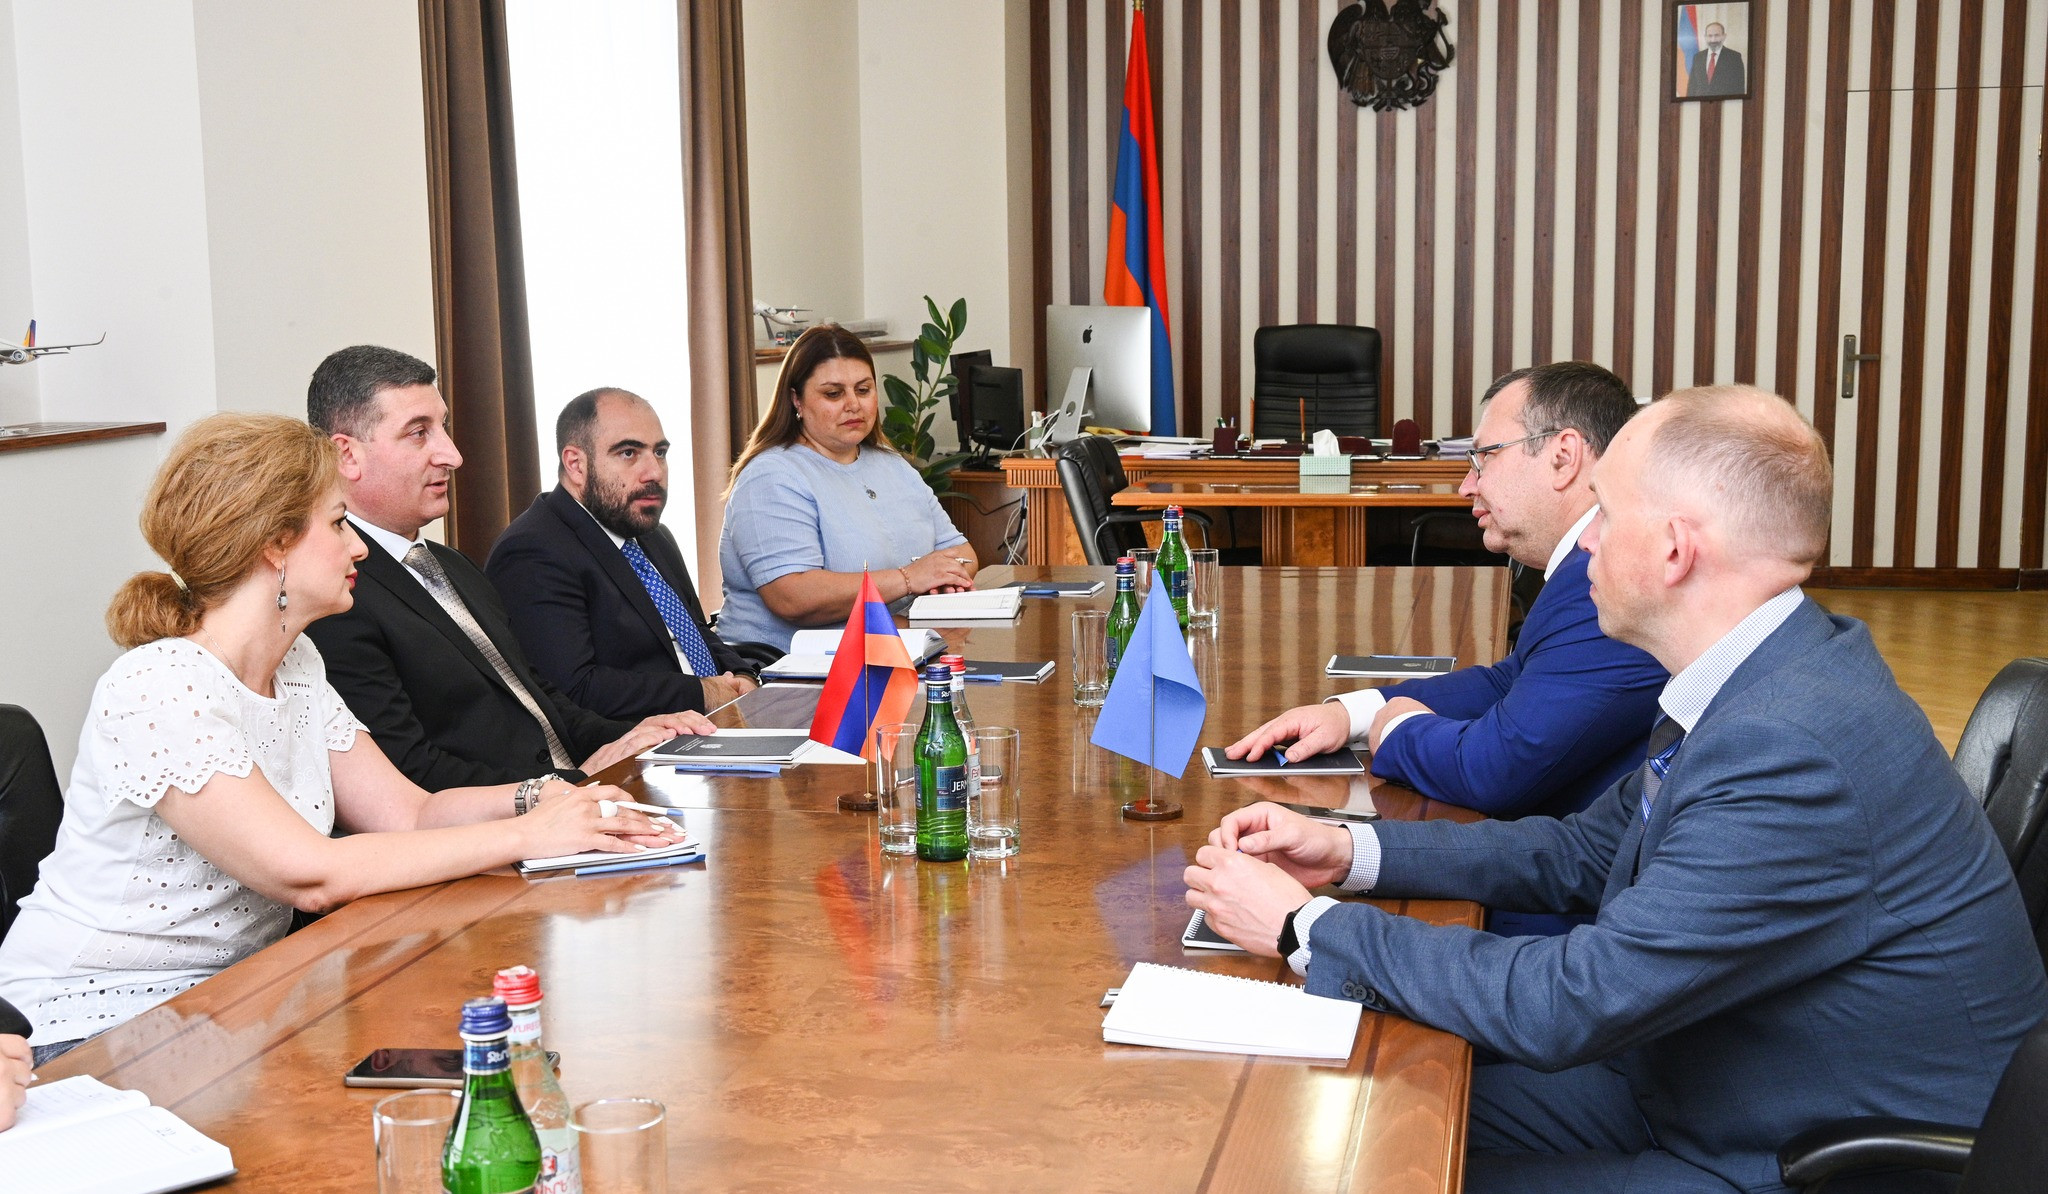 Հայաստանը կարևորում է ԱՊՀ էլեկտրաէնեգետիկական խորհրդի հետ համագործակցությունը. ՏԿԵ նախարարը՝ Տառաս Կուպչիկովին